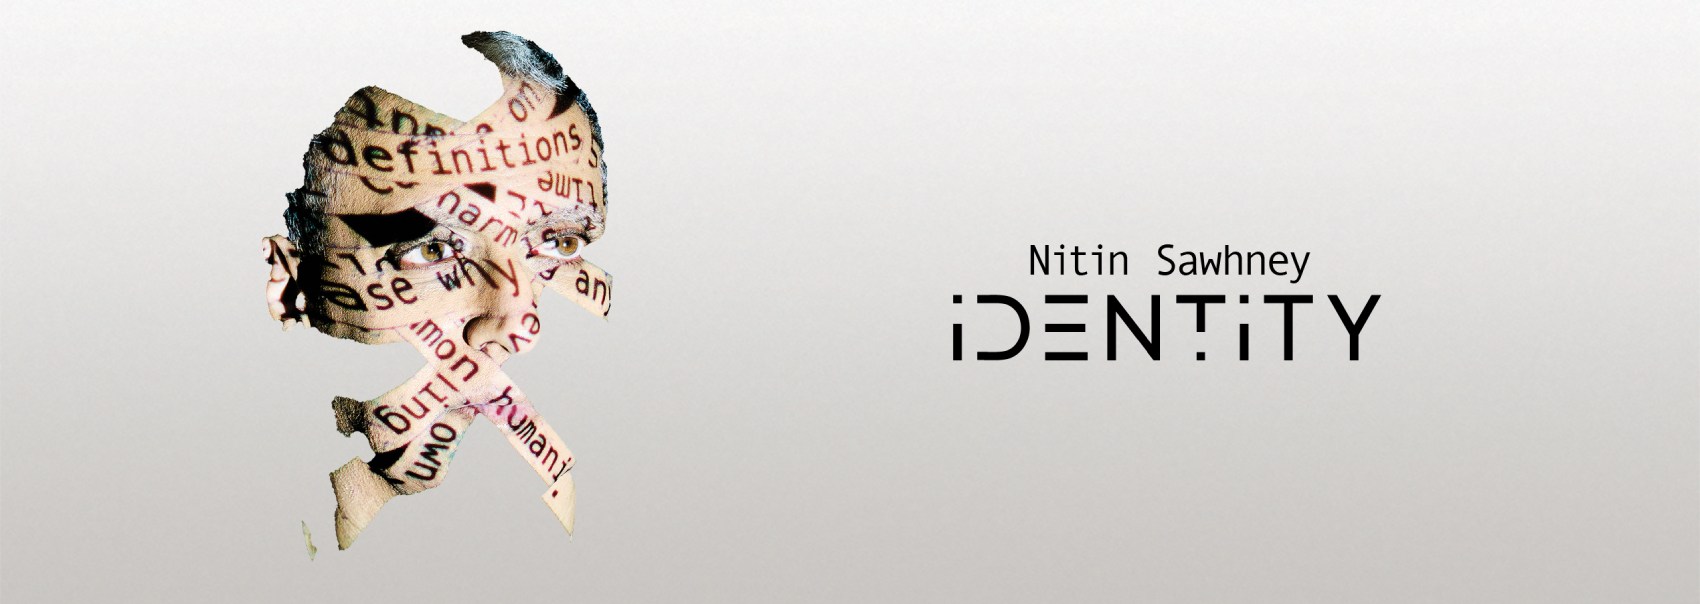 Nitin Sawhney's new album Identity